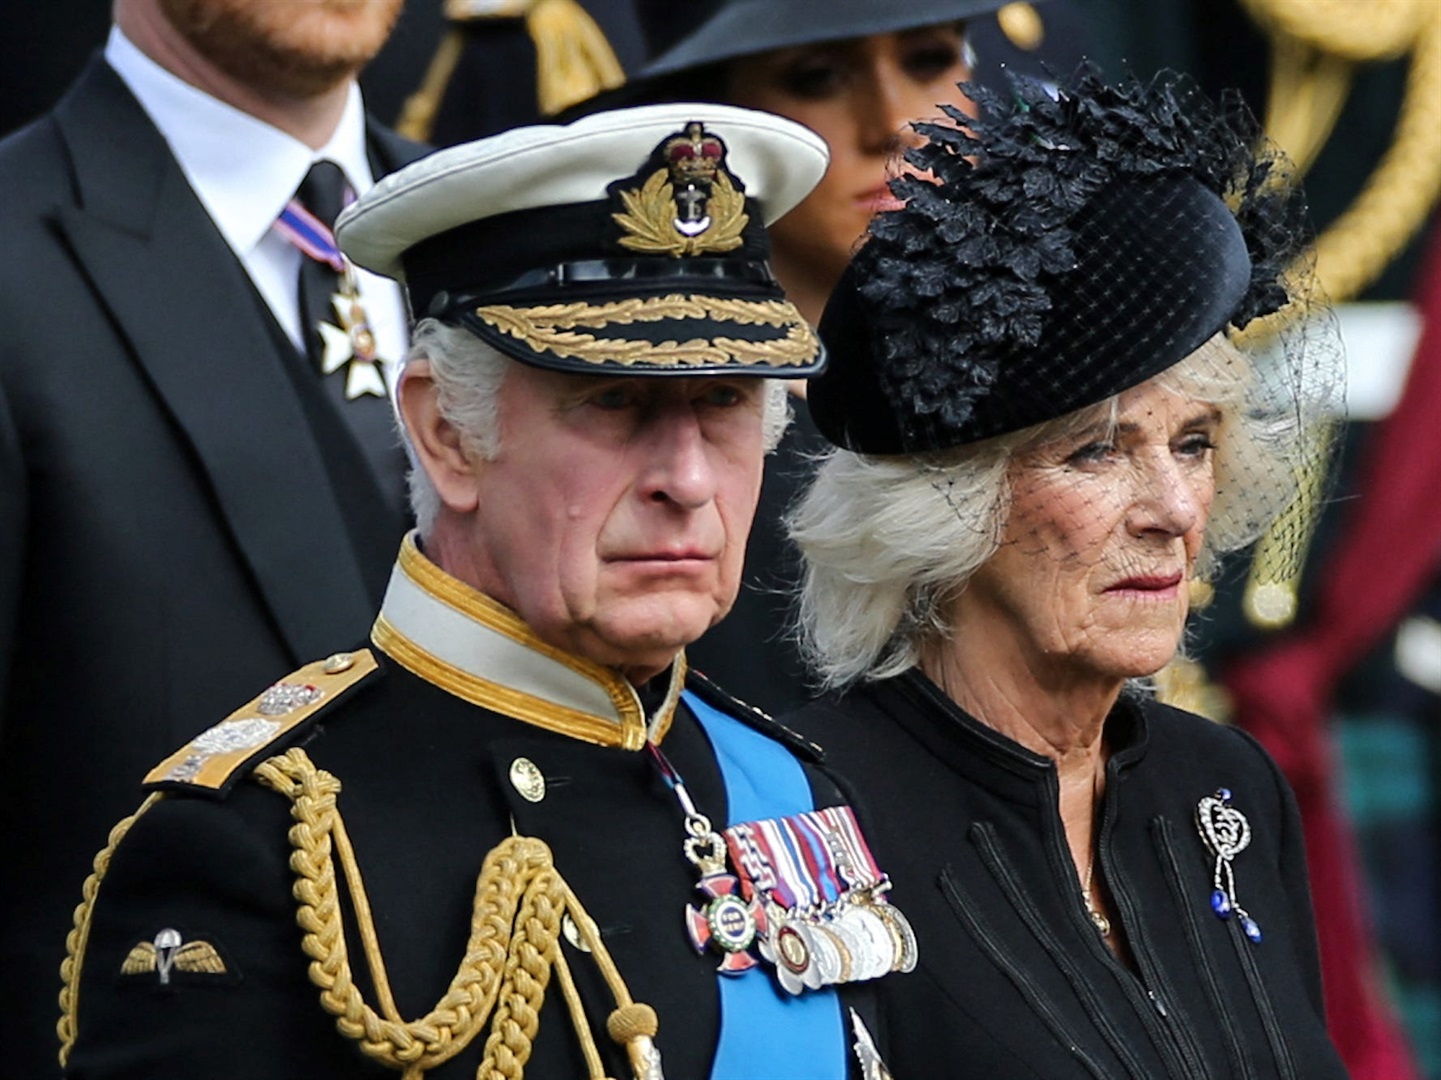 Kraliçe Consort'un özel bir konut tutacağı bildiriliyor.  ISABEL BEBEKLER / Katılımcı / Getty Images